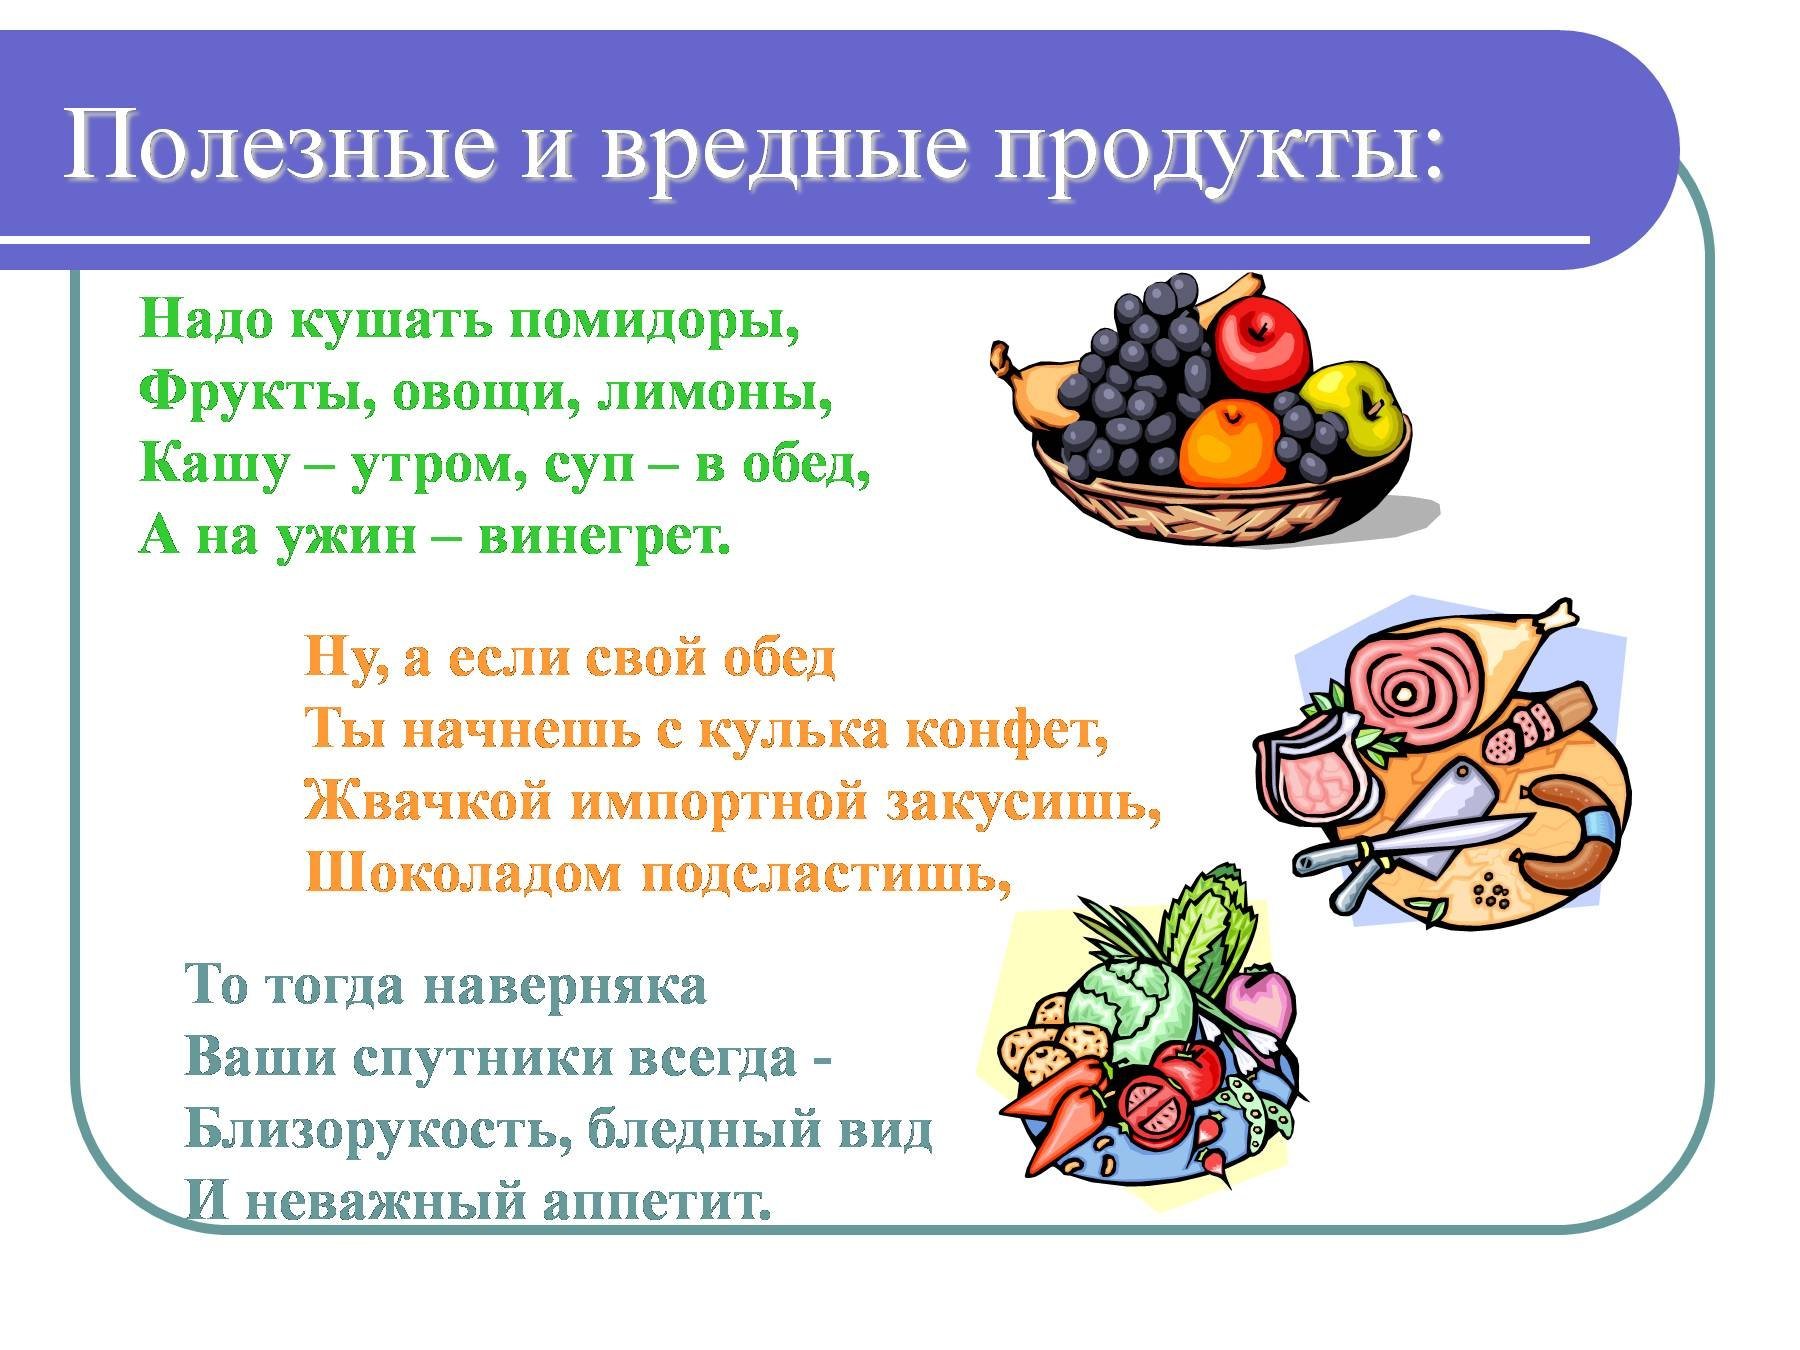 Кашам фруктам овощам. Овощи и фрукты полезные продукты. Информация о полезном питании. Информация о полезной еде. Сообщение о полезной еде.